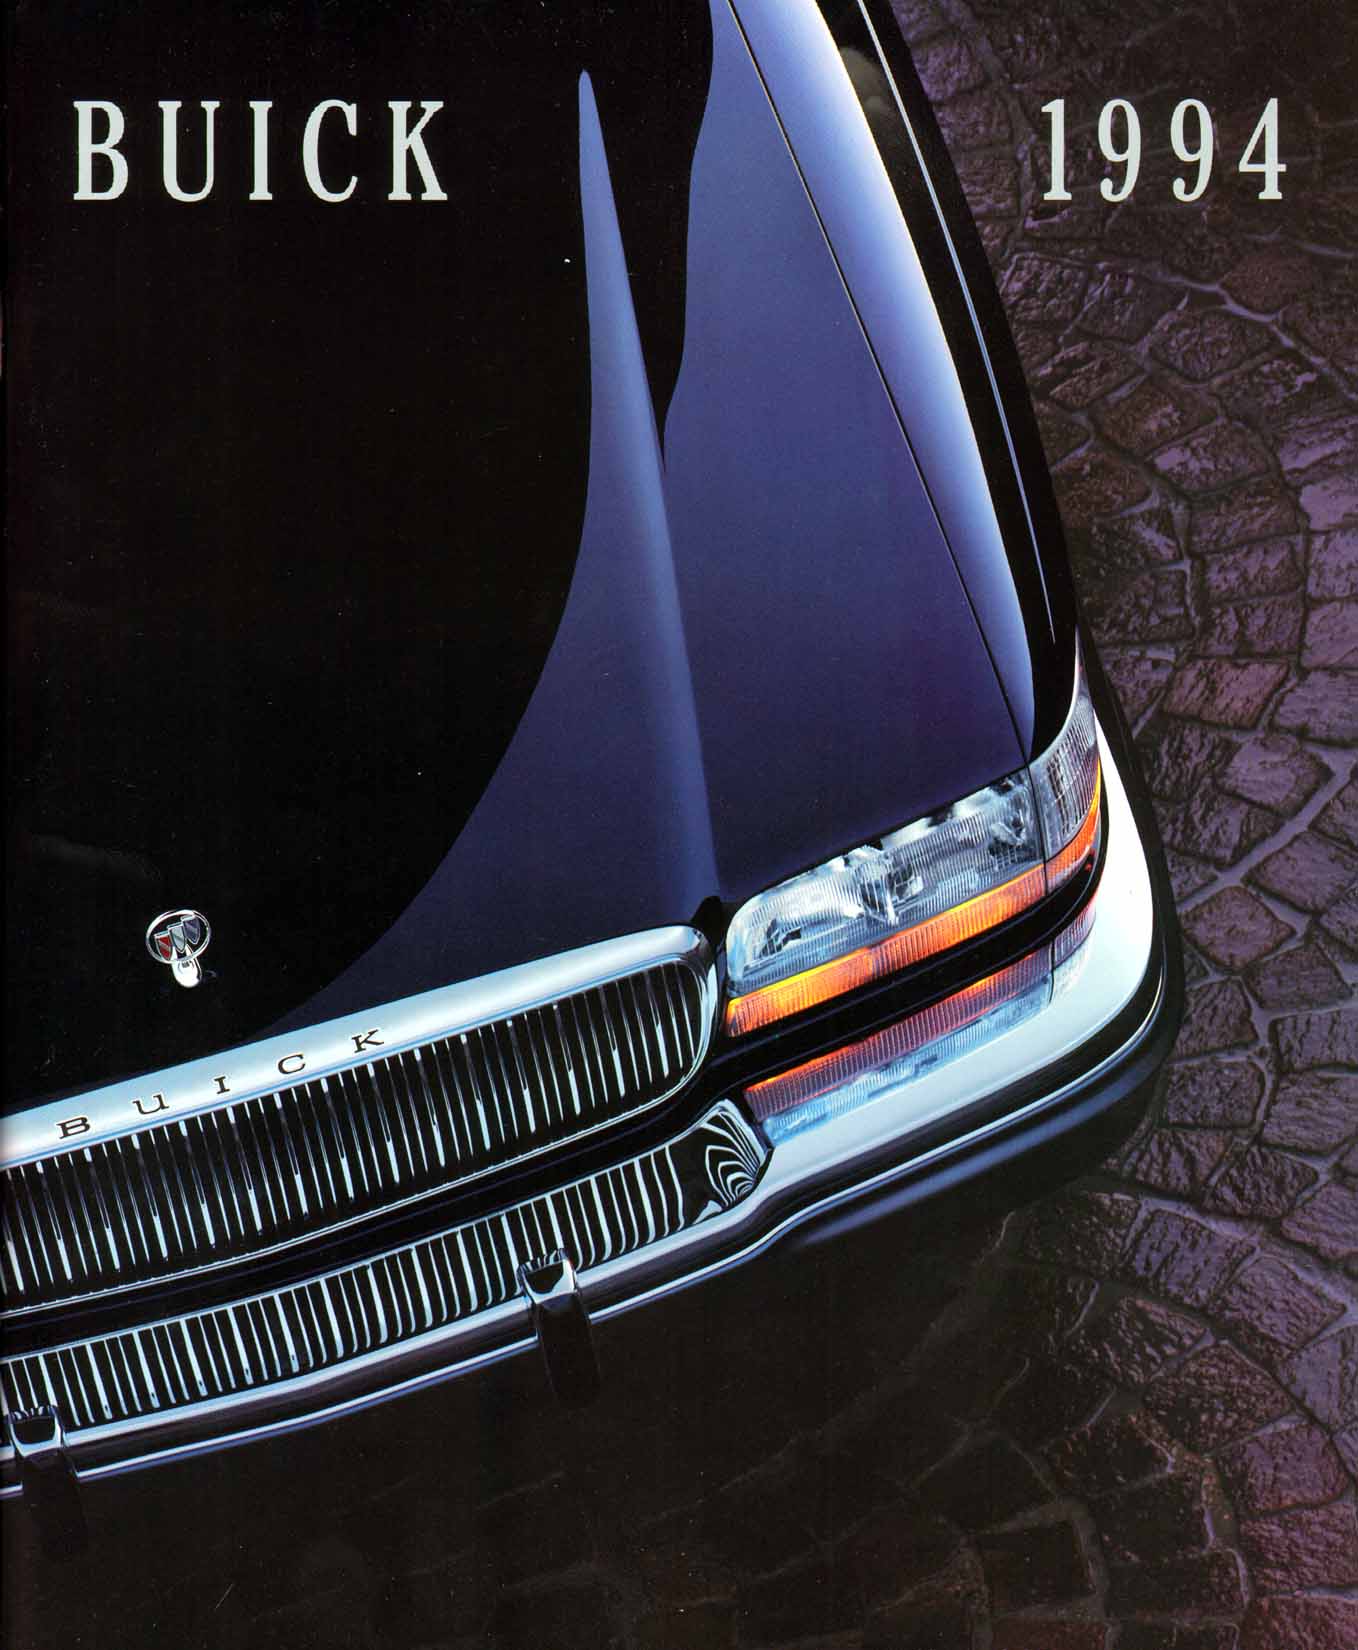 1994 Buick Full Line Prestige-01